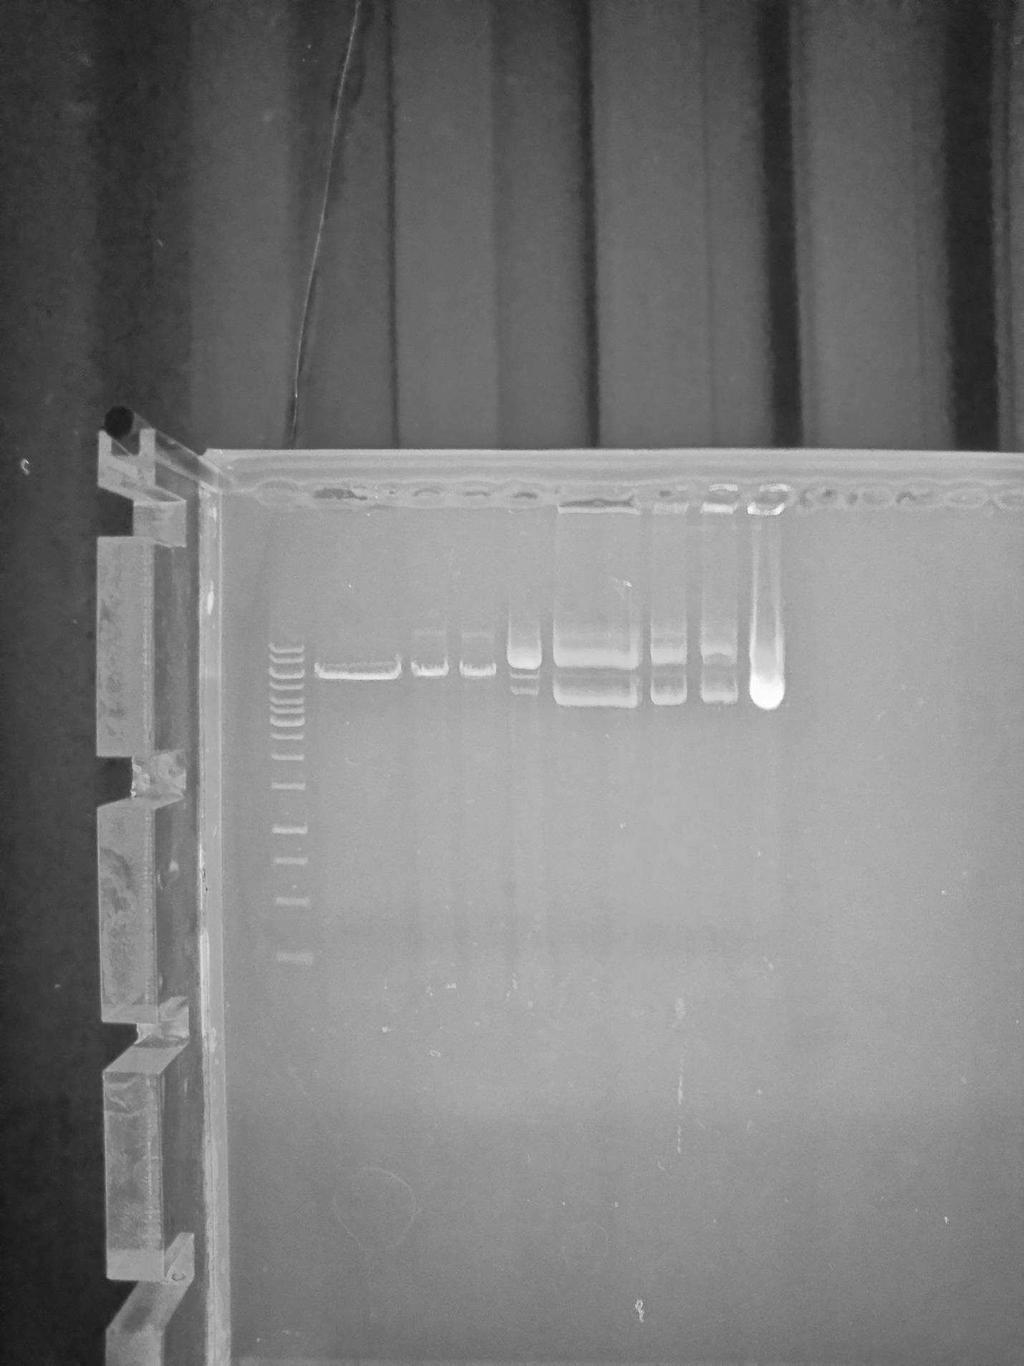 5.3 Az anuroctoxin rekombináns szintézise Az anuroctoxin gén klónozása az anyag és módszerek c. fejezetben került ismertetésre.